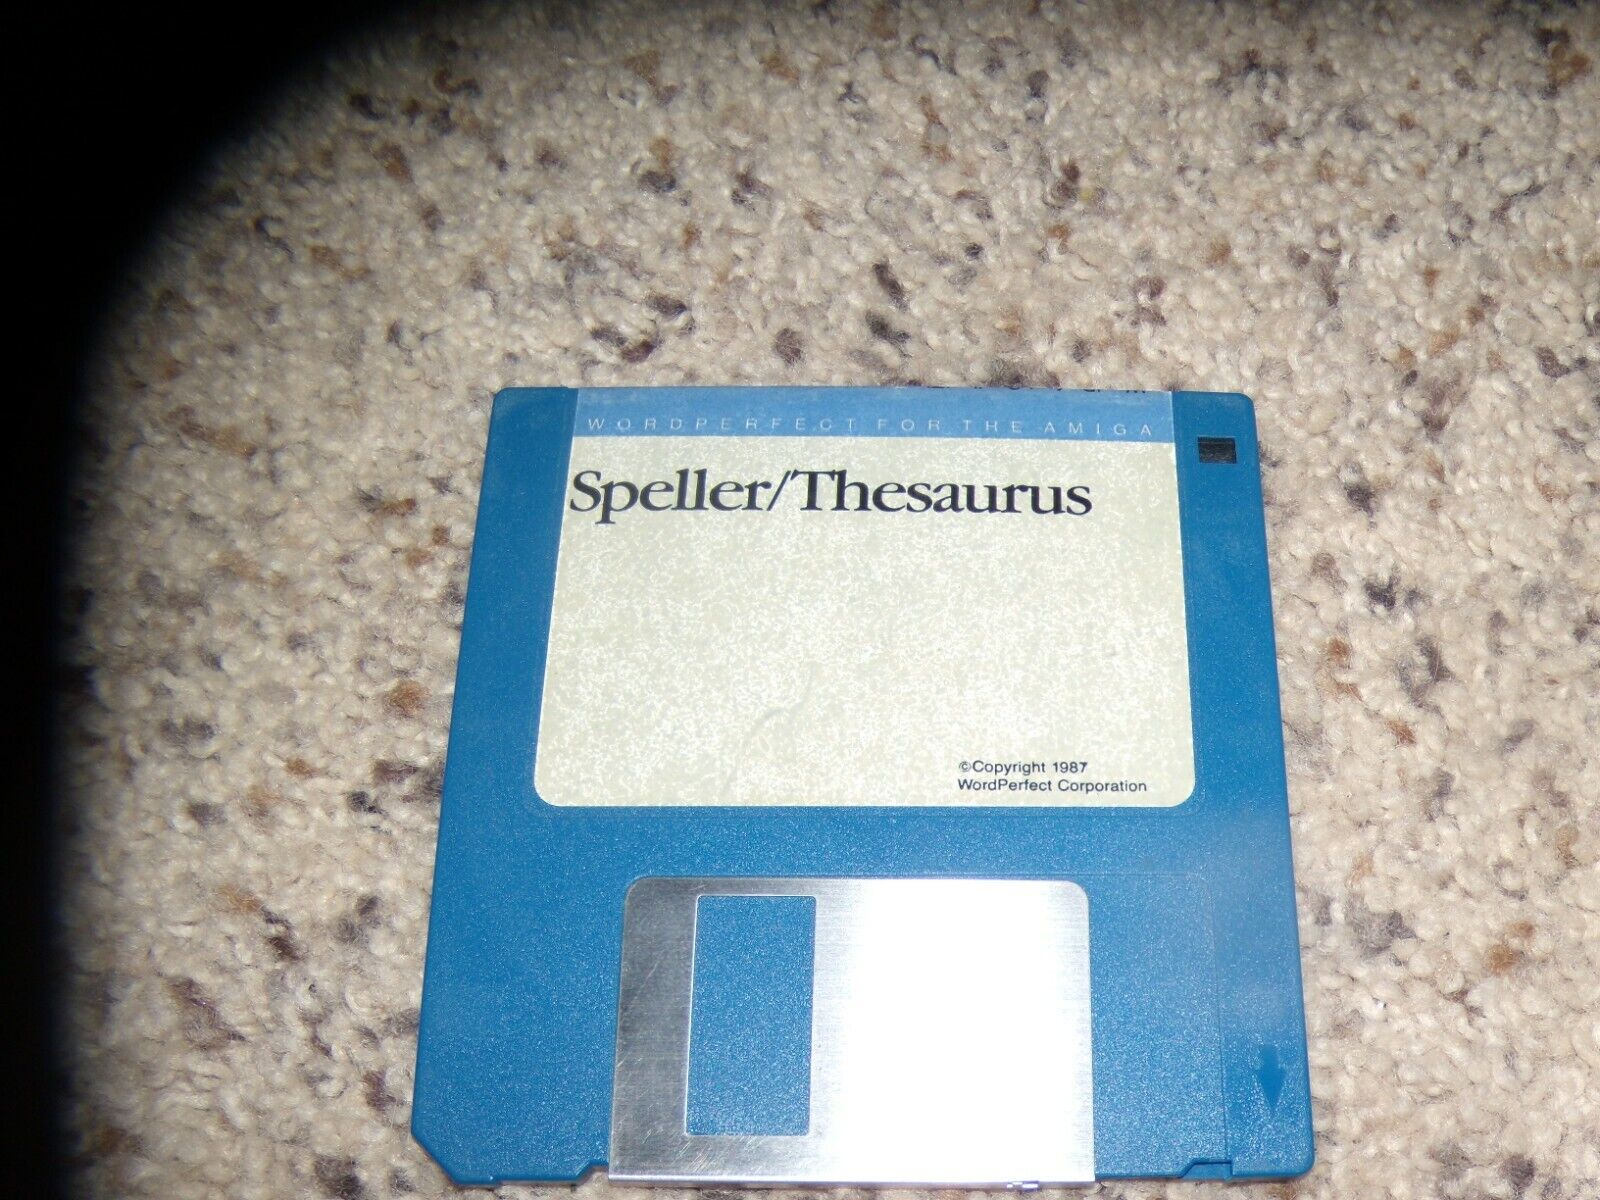 Speller/Thesaurus Commodore Amiga on 3.5